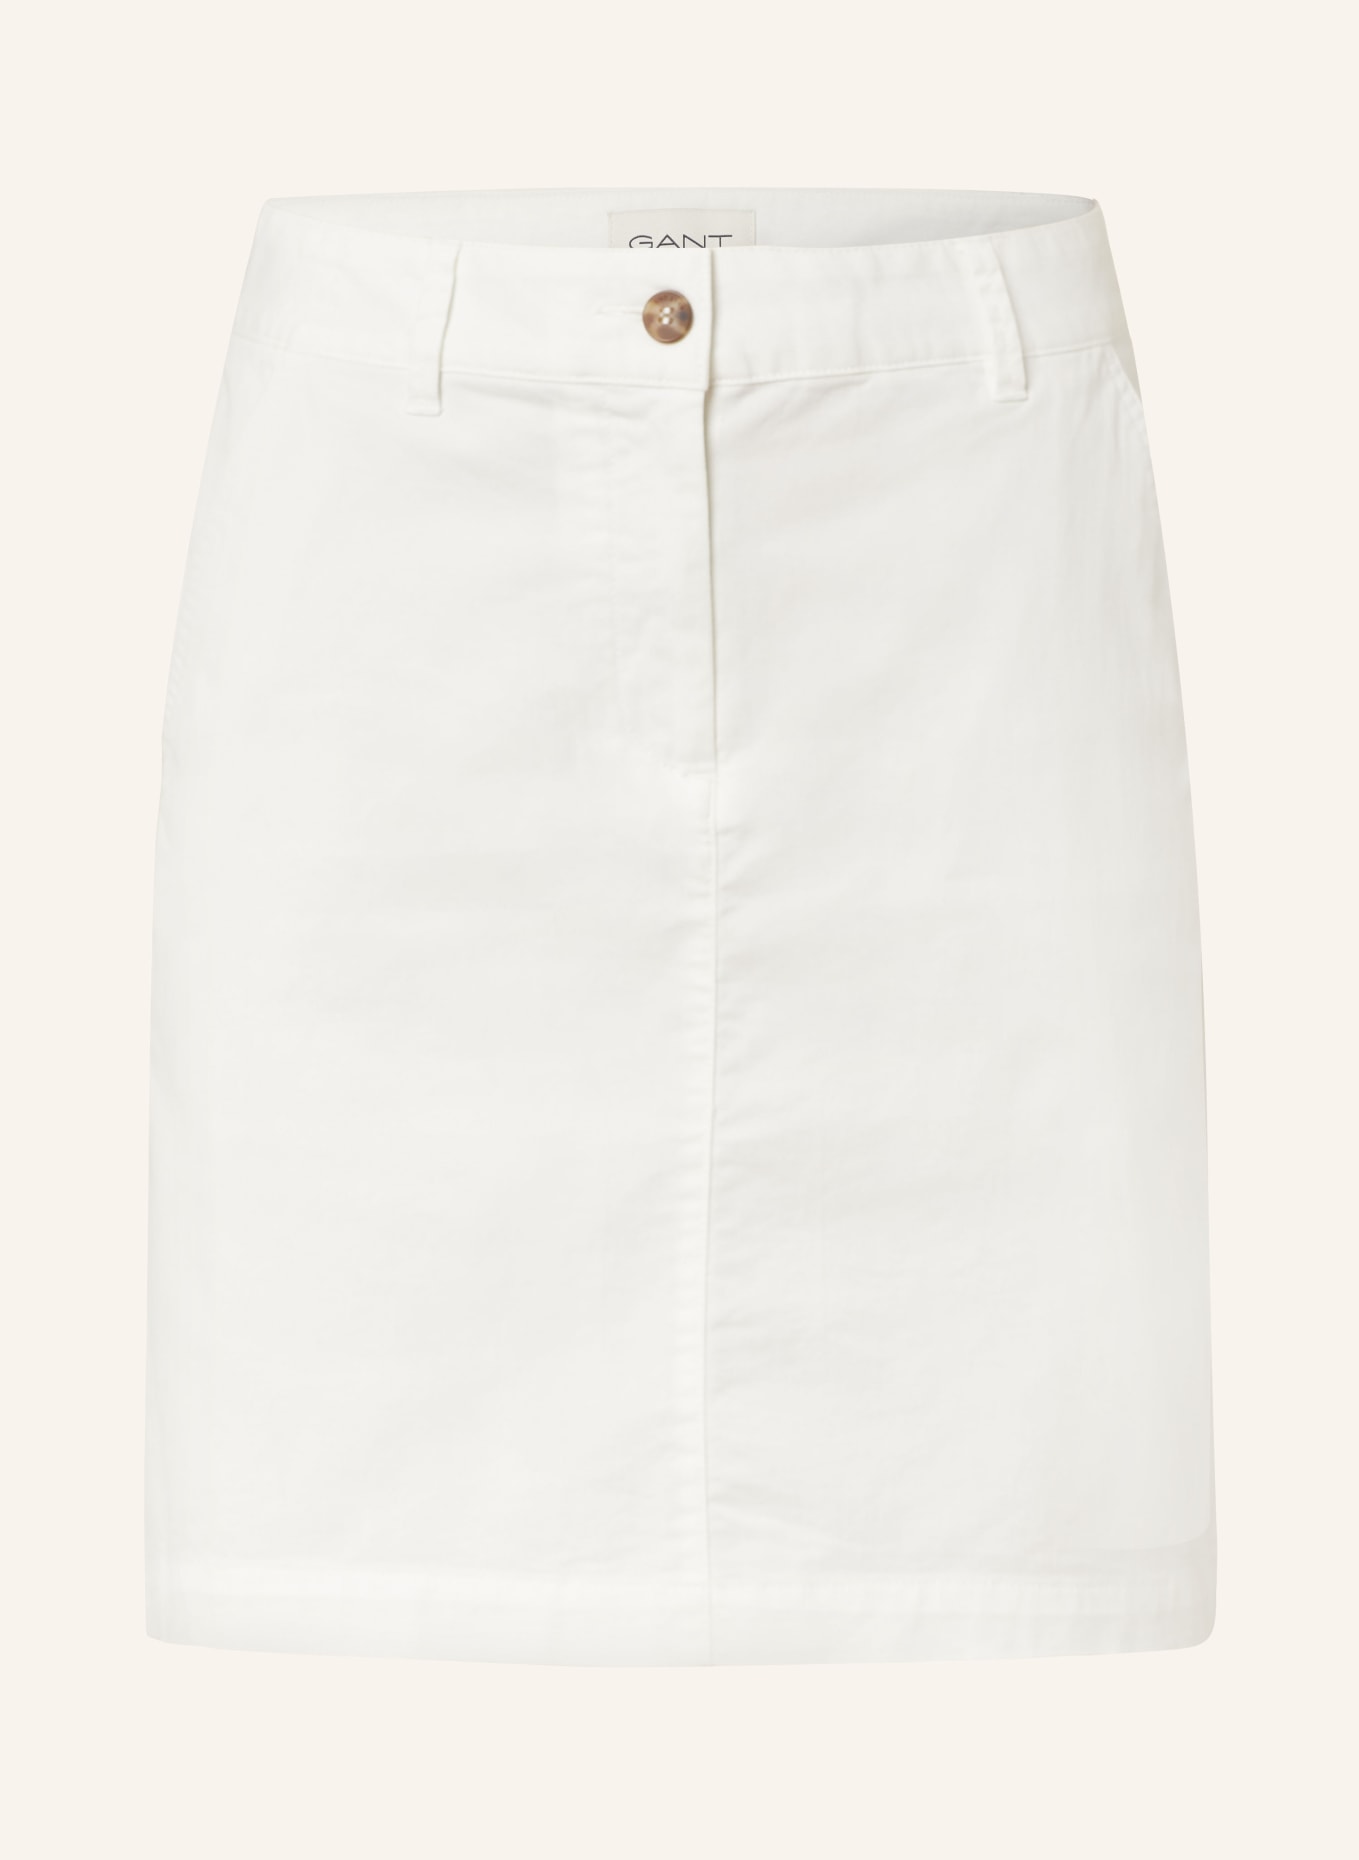 GANT Skirt, Color: WHITE (Image 1)